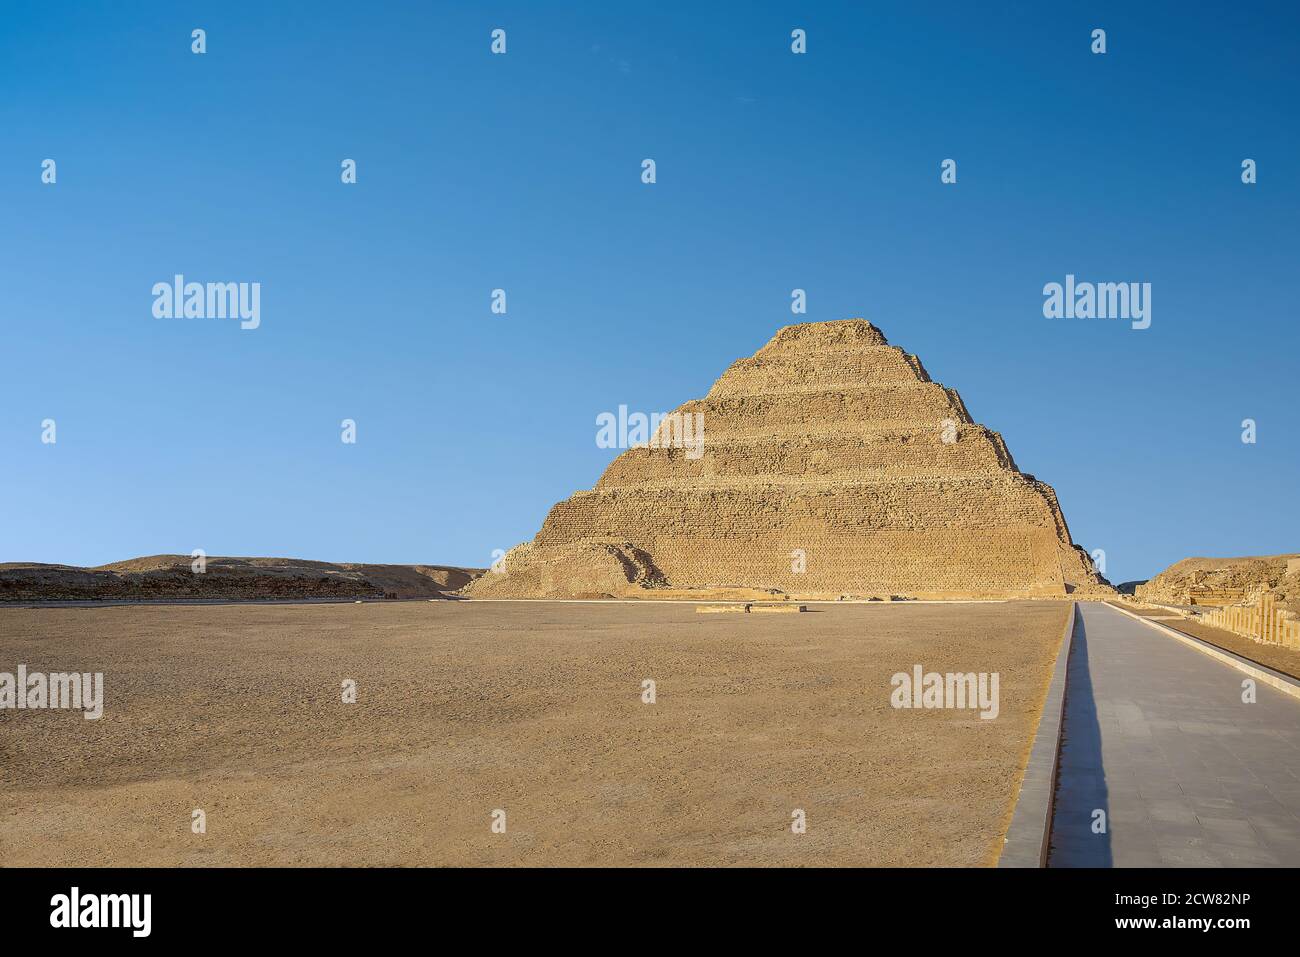 Memphis, Égypt - la più antica piramide a gradoni in Egitto, progettata da Imhotep per Re Djoser, situata a Saqqara, un antico bu Foto Stock